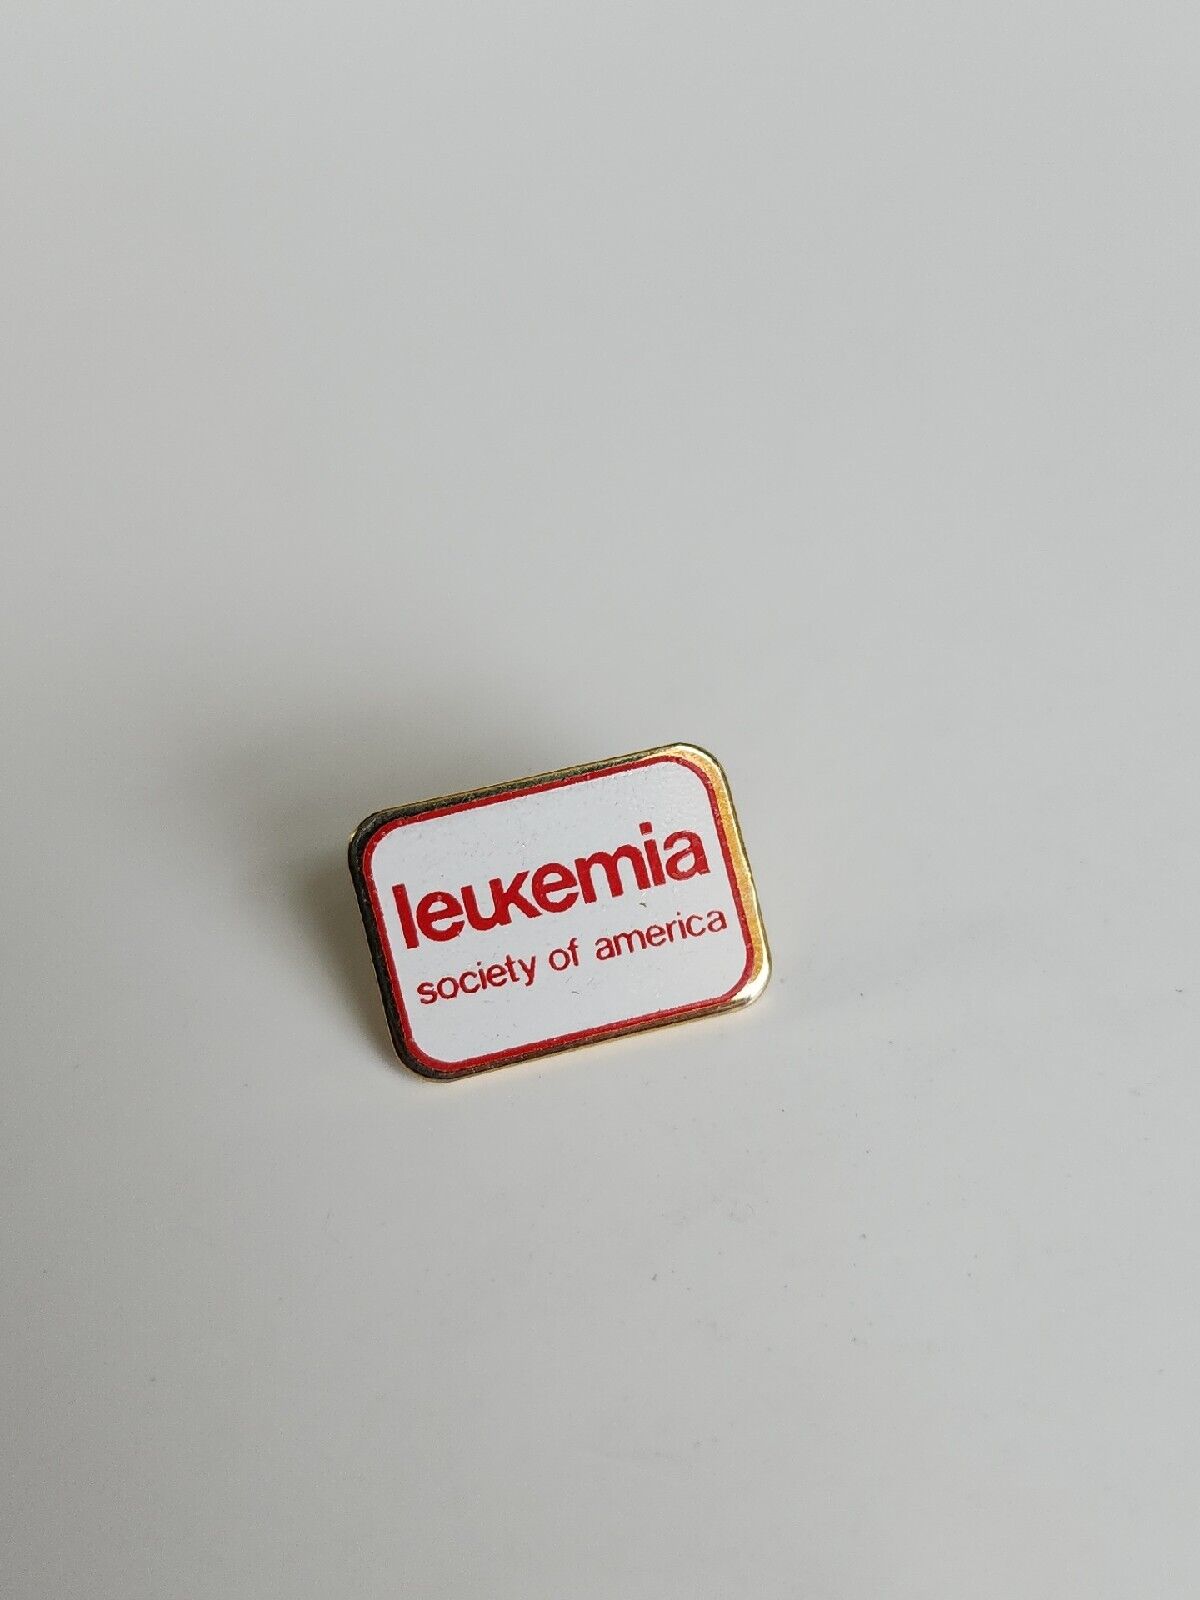 Leukemia Society Of America Lapel Pin Small Size